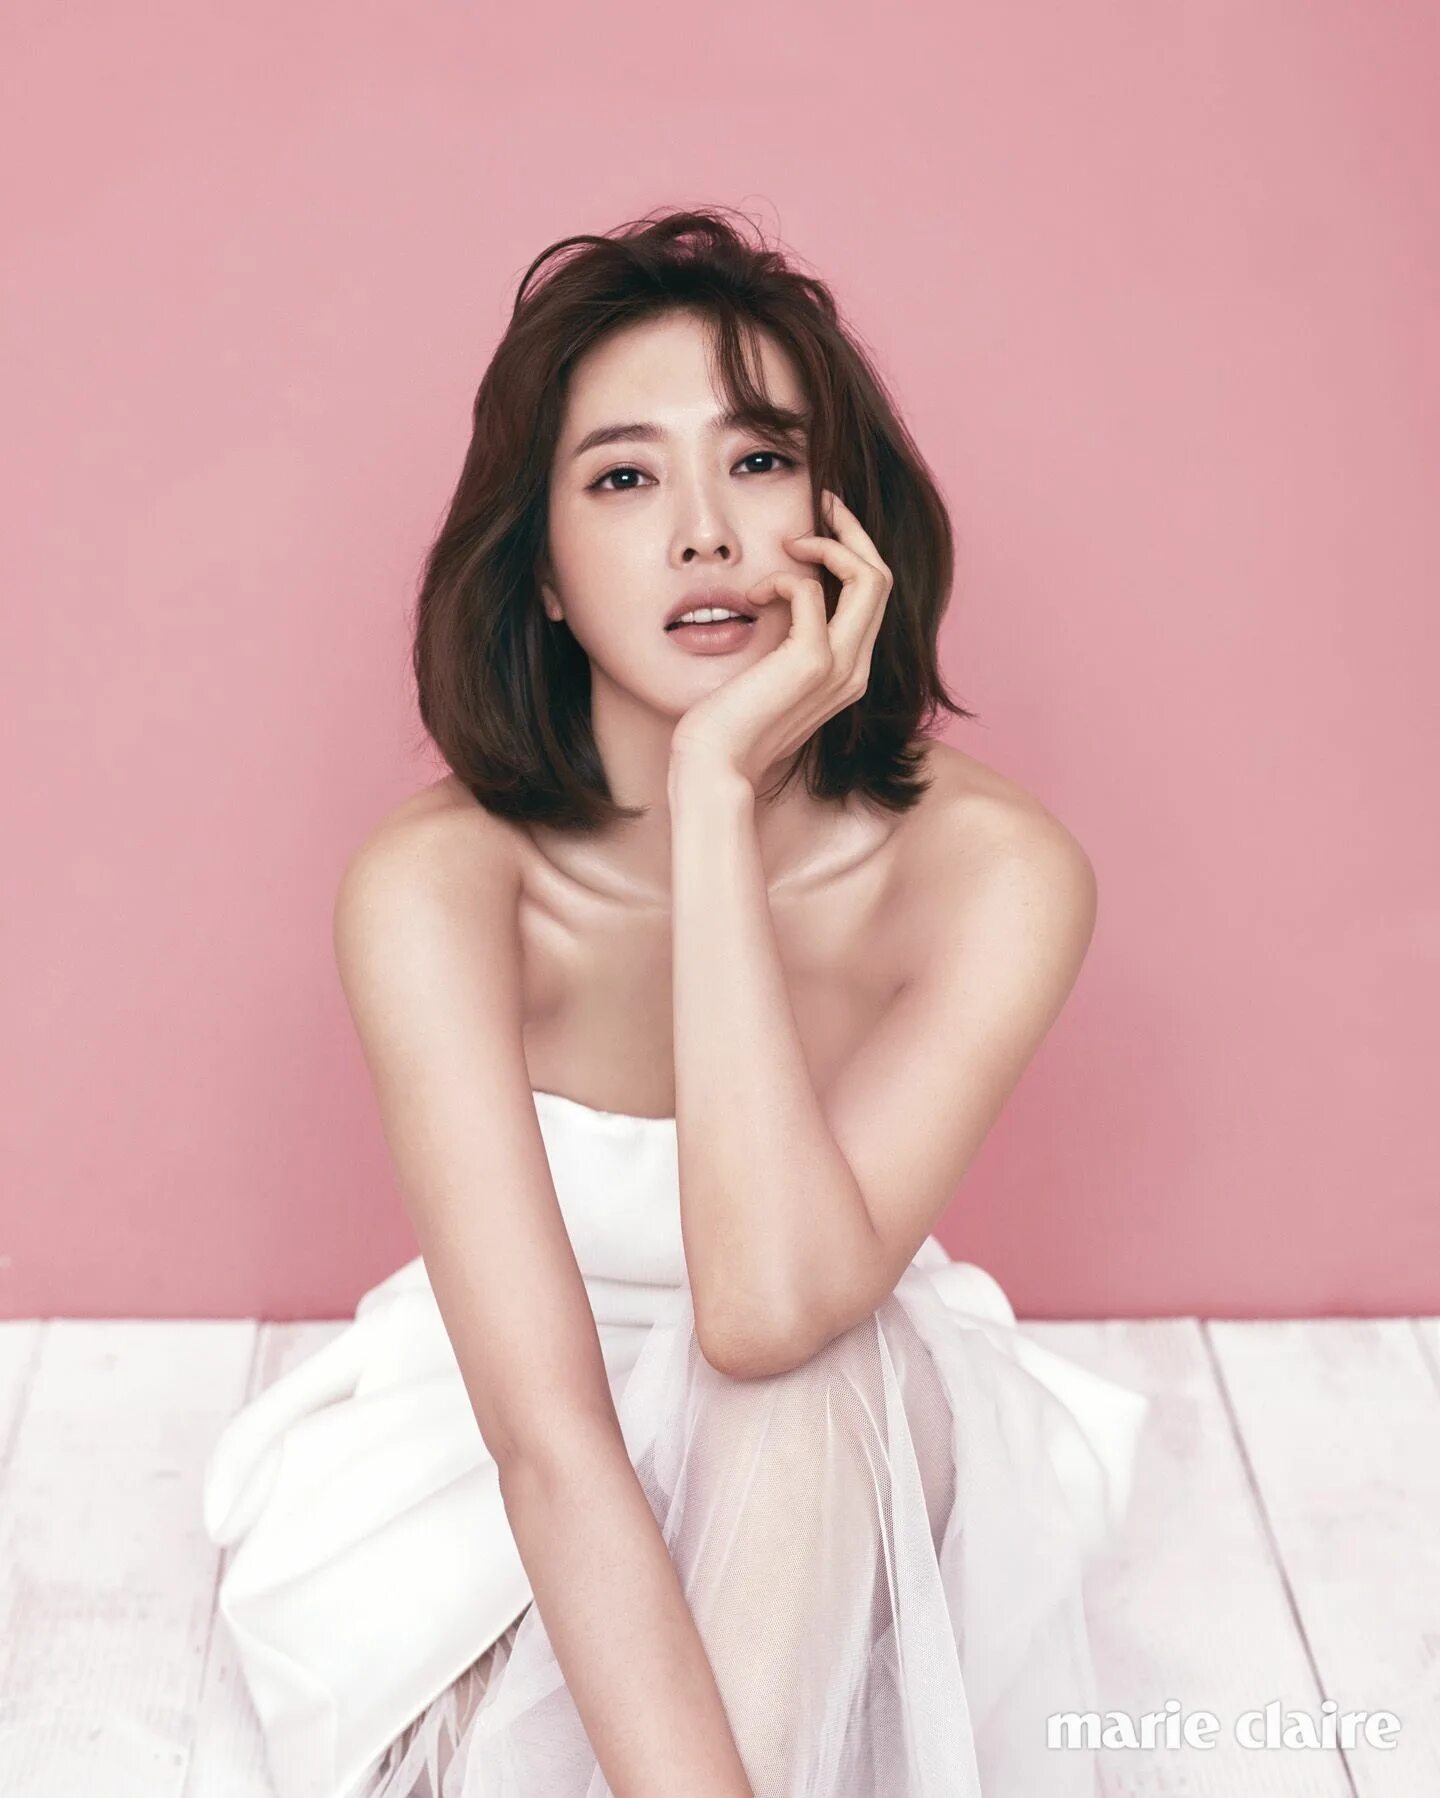 Пак мин дже. Wang Ji Hye. Ван Чжи хё. Ван Чжи вон. Ван Джи-Хе корейская актриса.